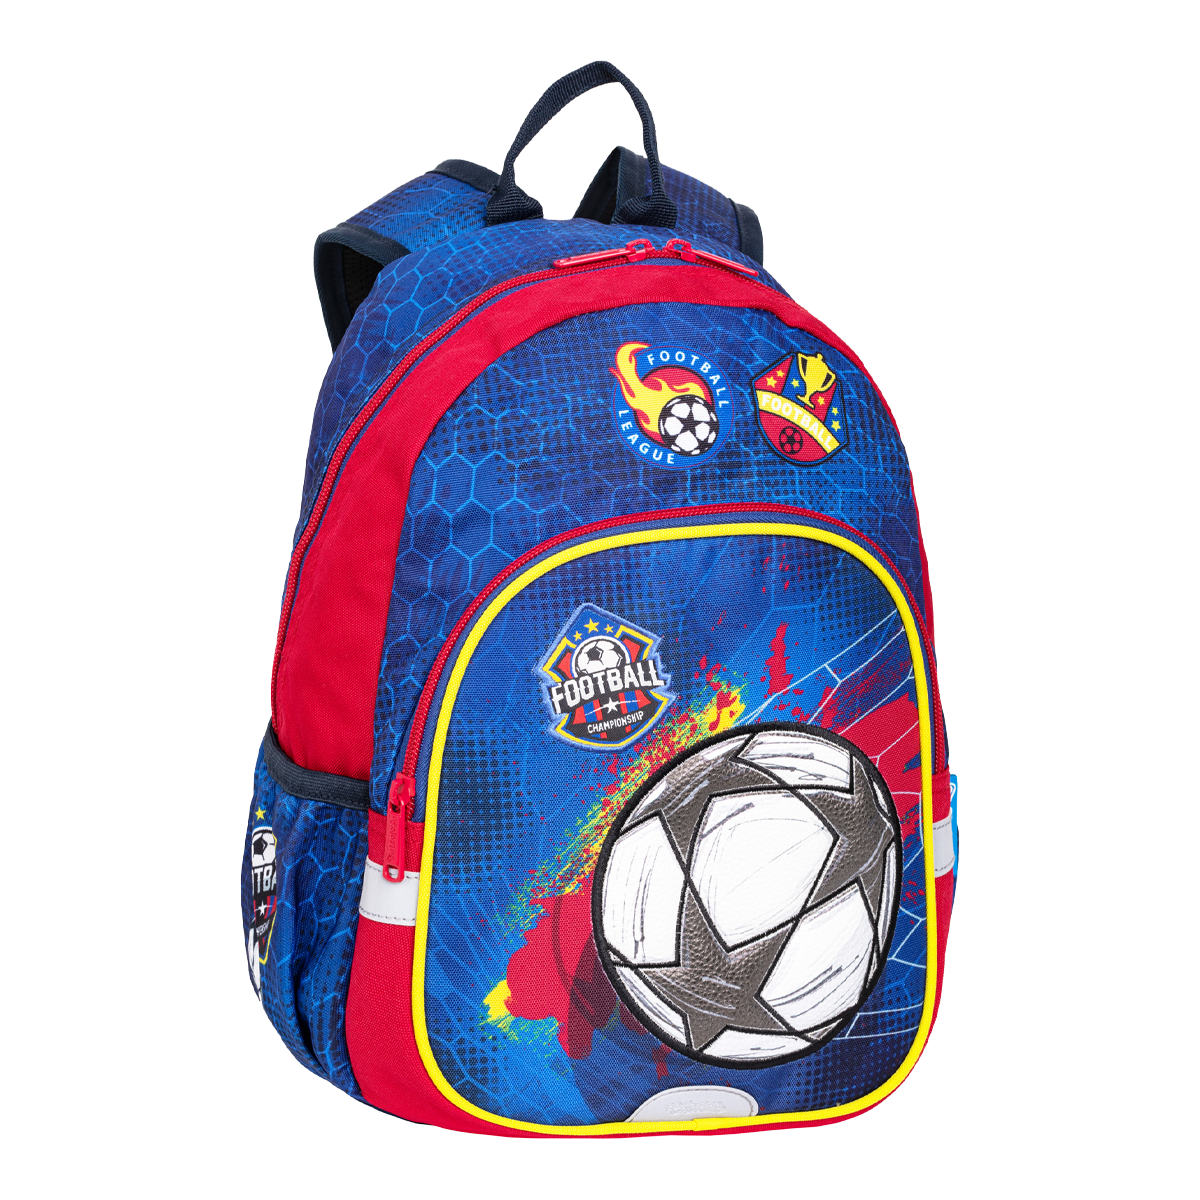 Levně Colorino dětský batůžek Toby - Football, š: 25 × v: 33 × h: 11 cm, PES